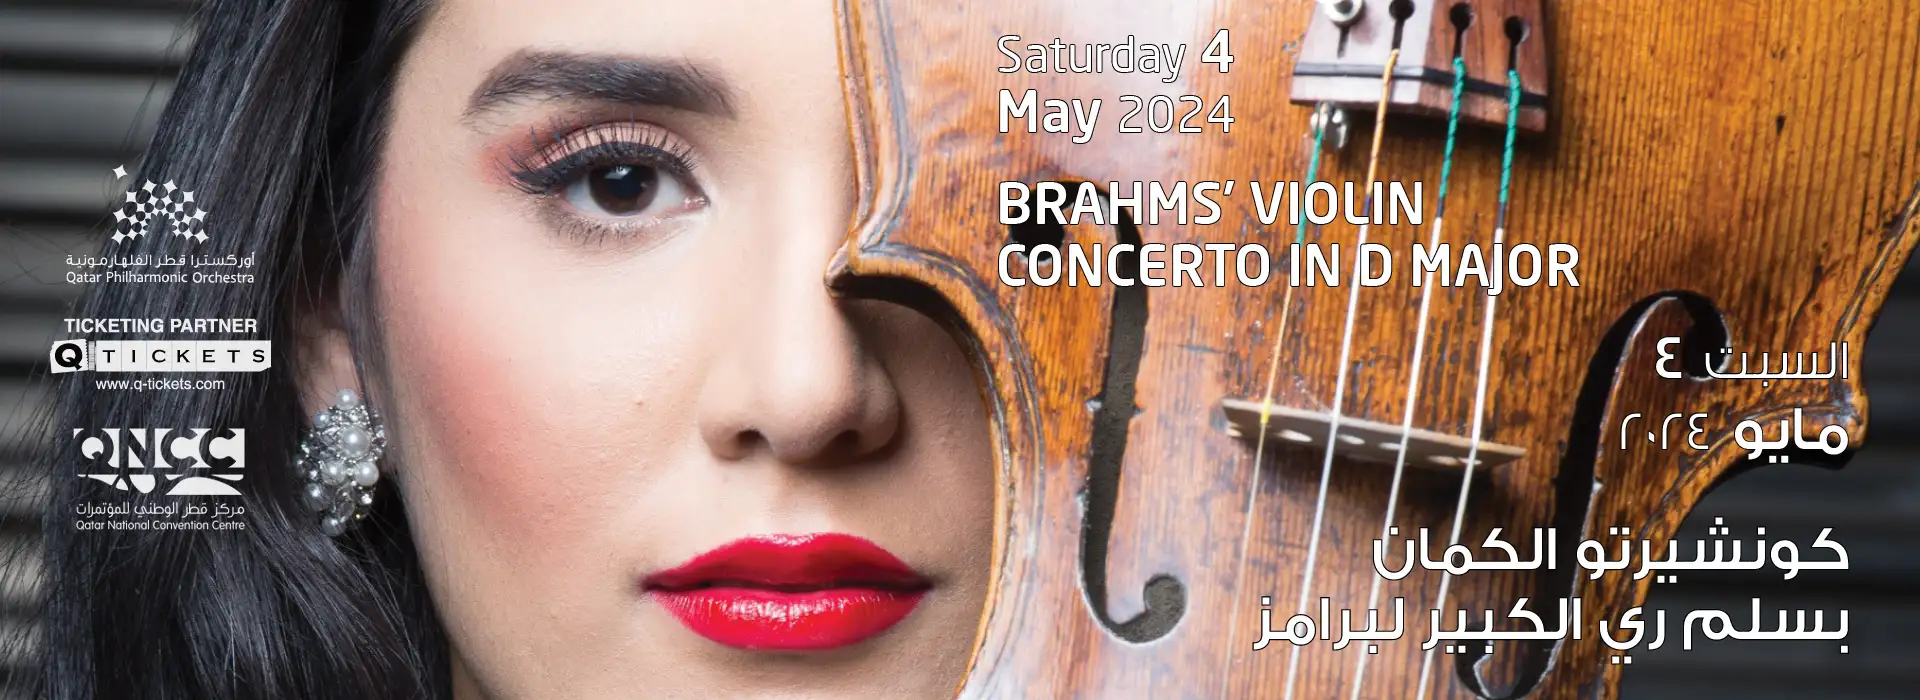 Brahms' Violin Concerto in D Major